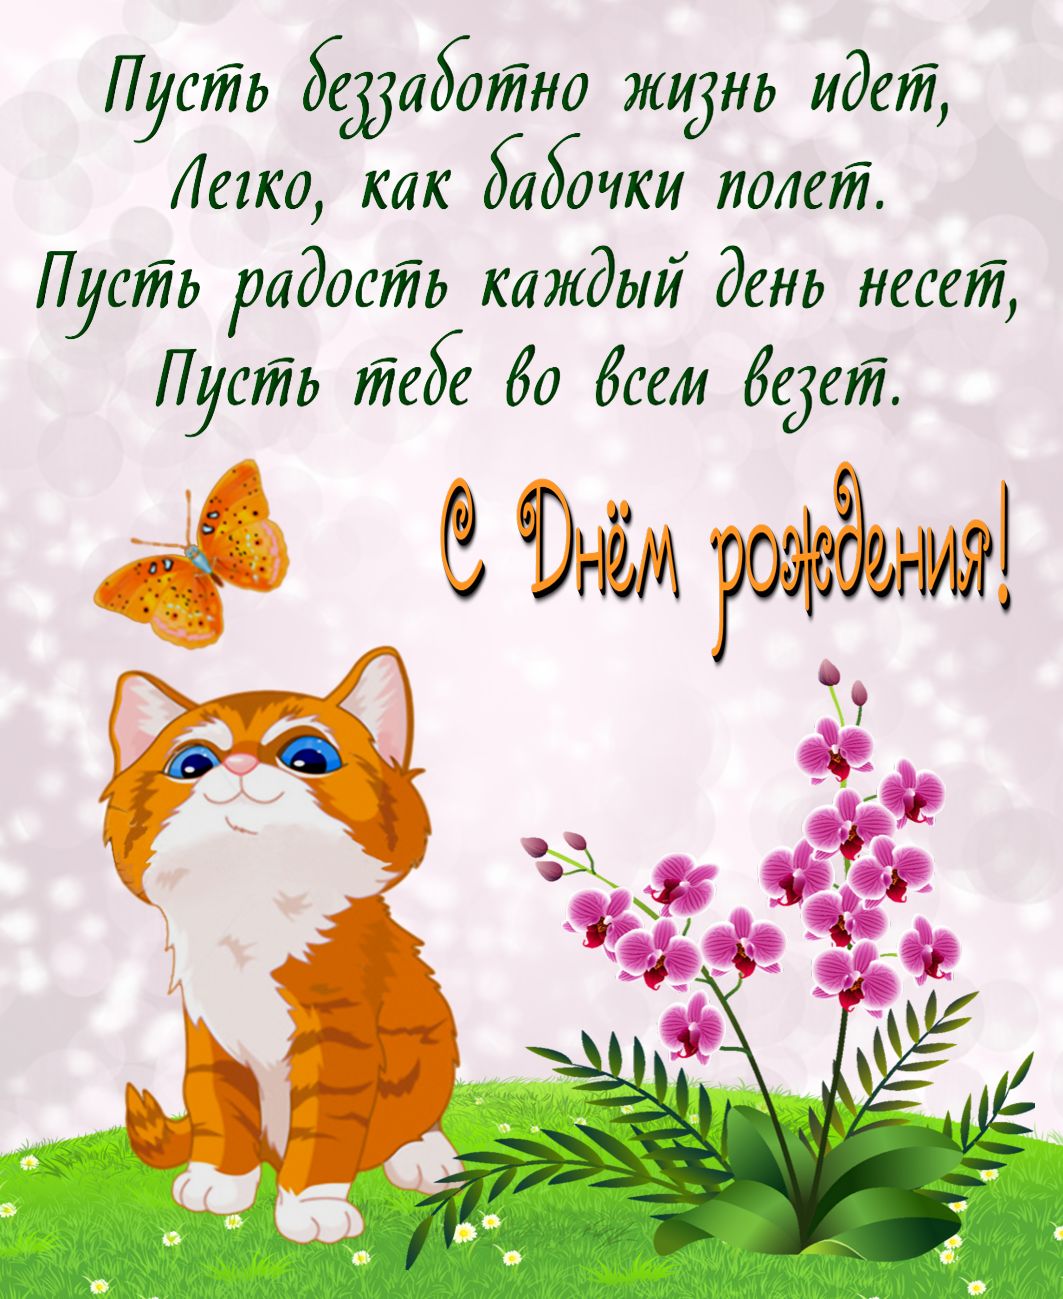 Трогательные поздравления с днем рождения женщине в прозе | redzhina.ru